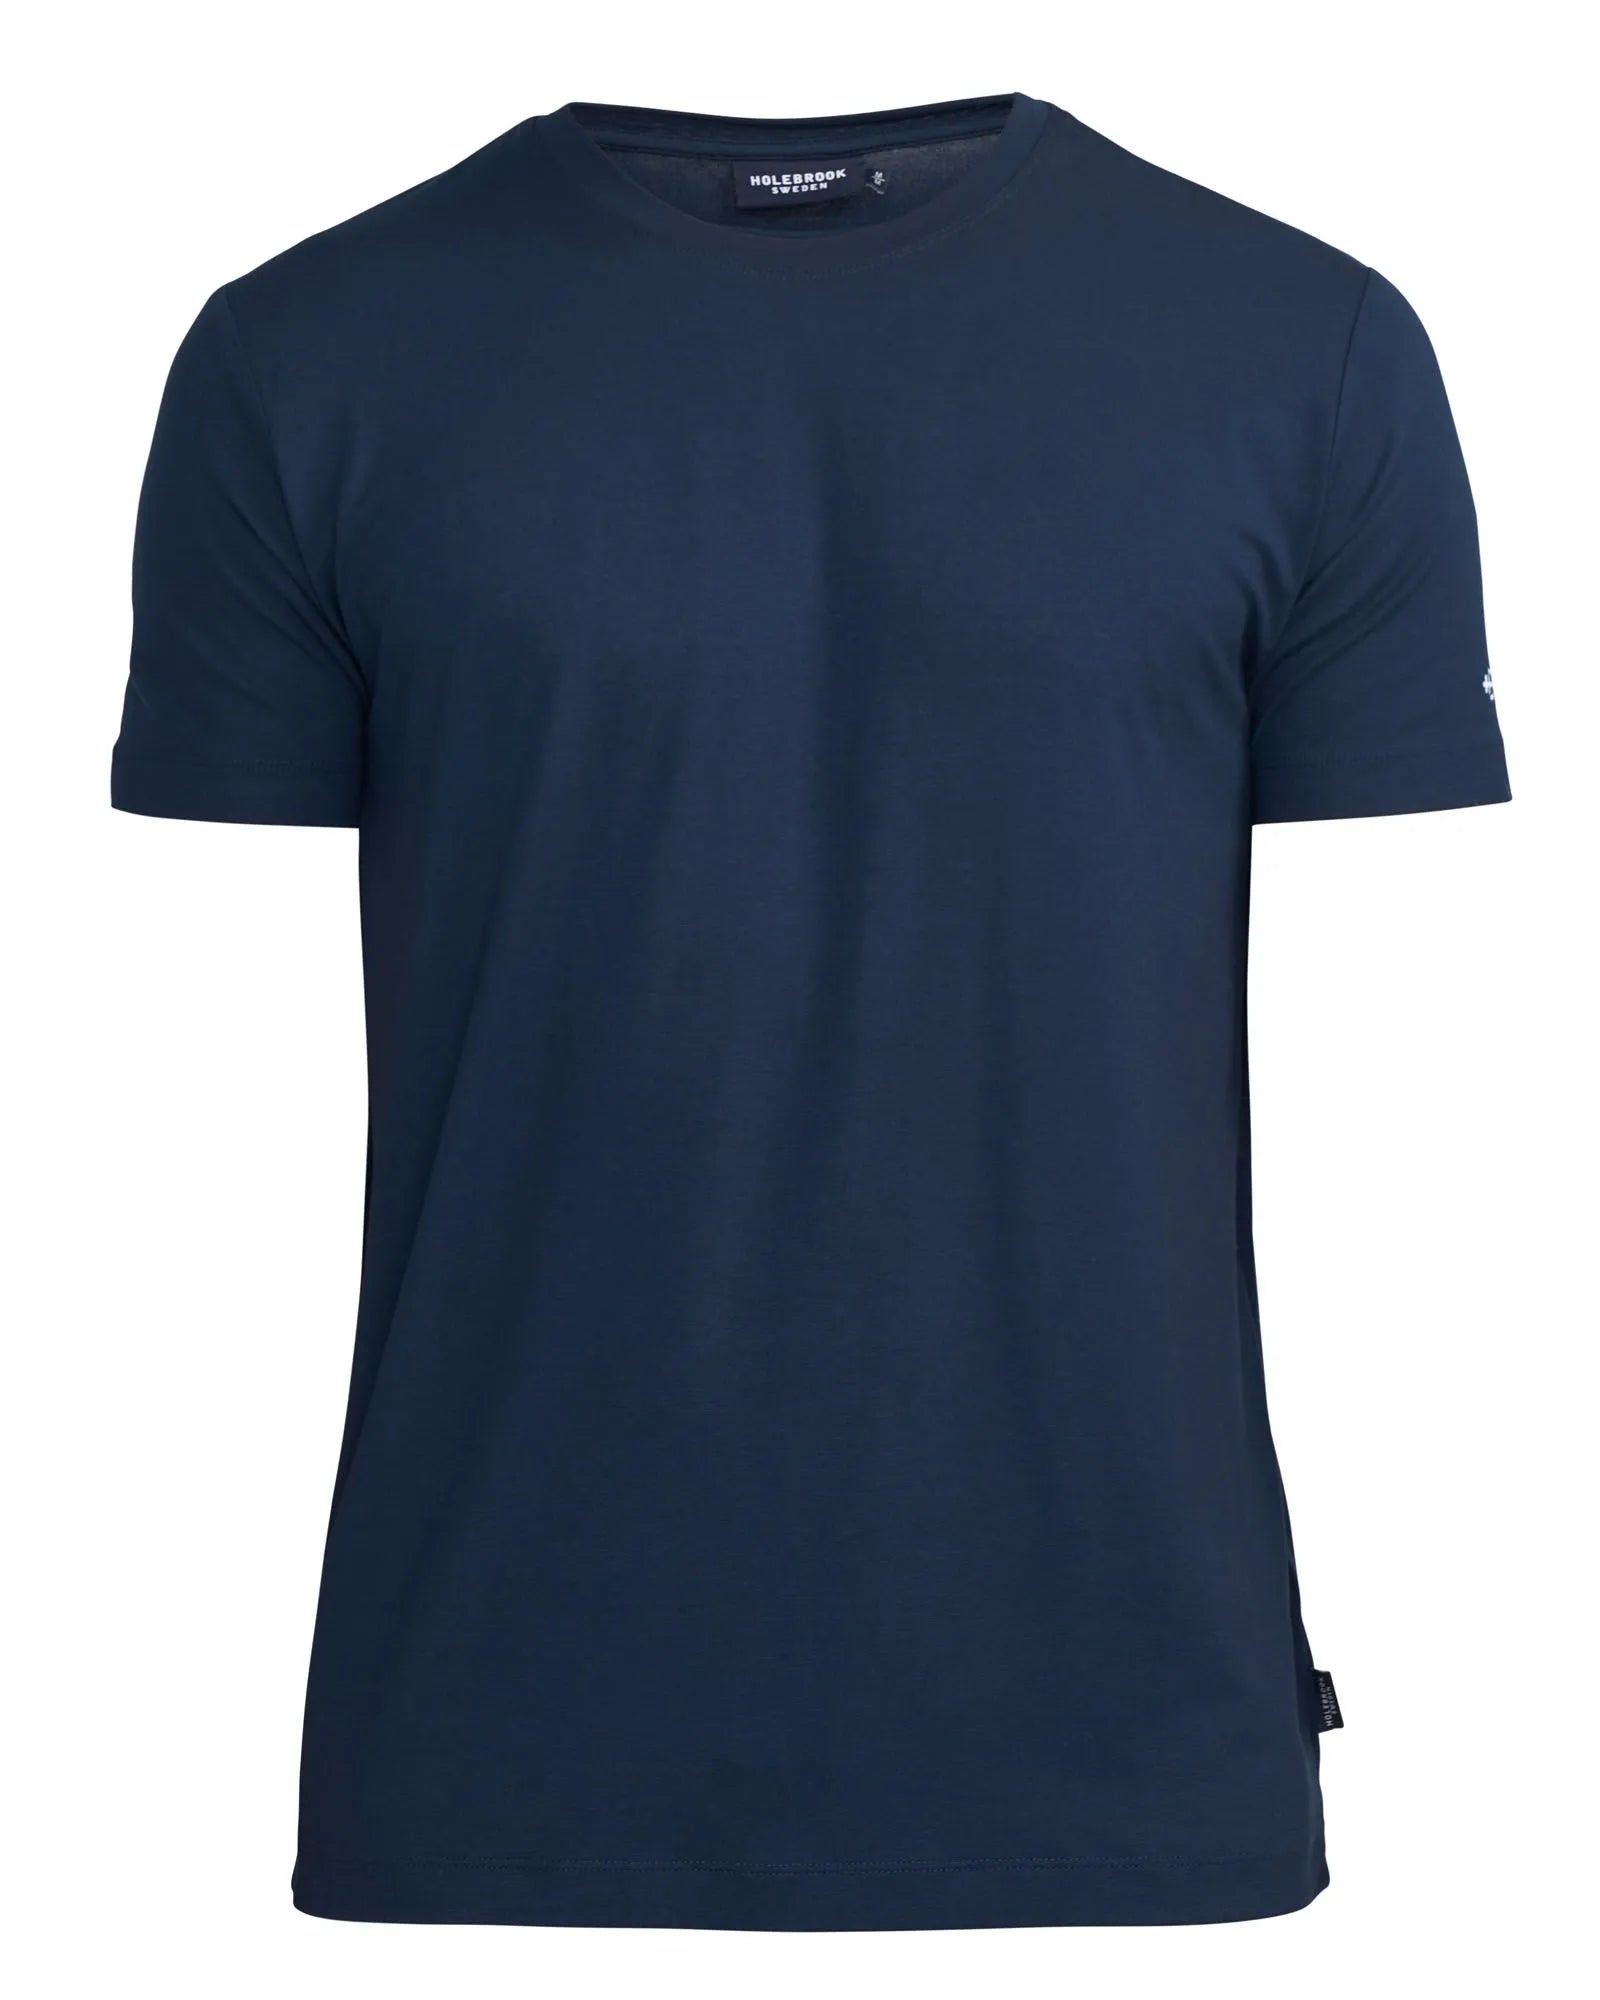 Robert T-Shirt - Navy